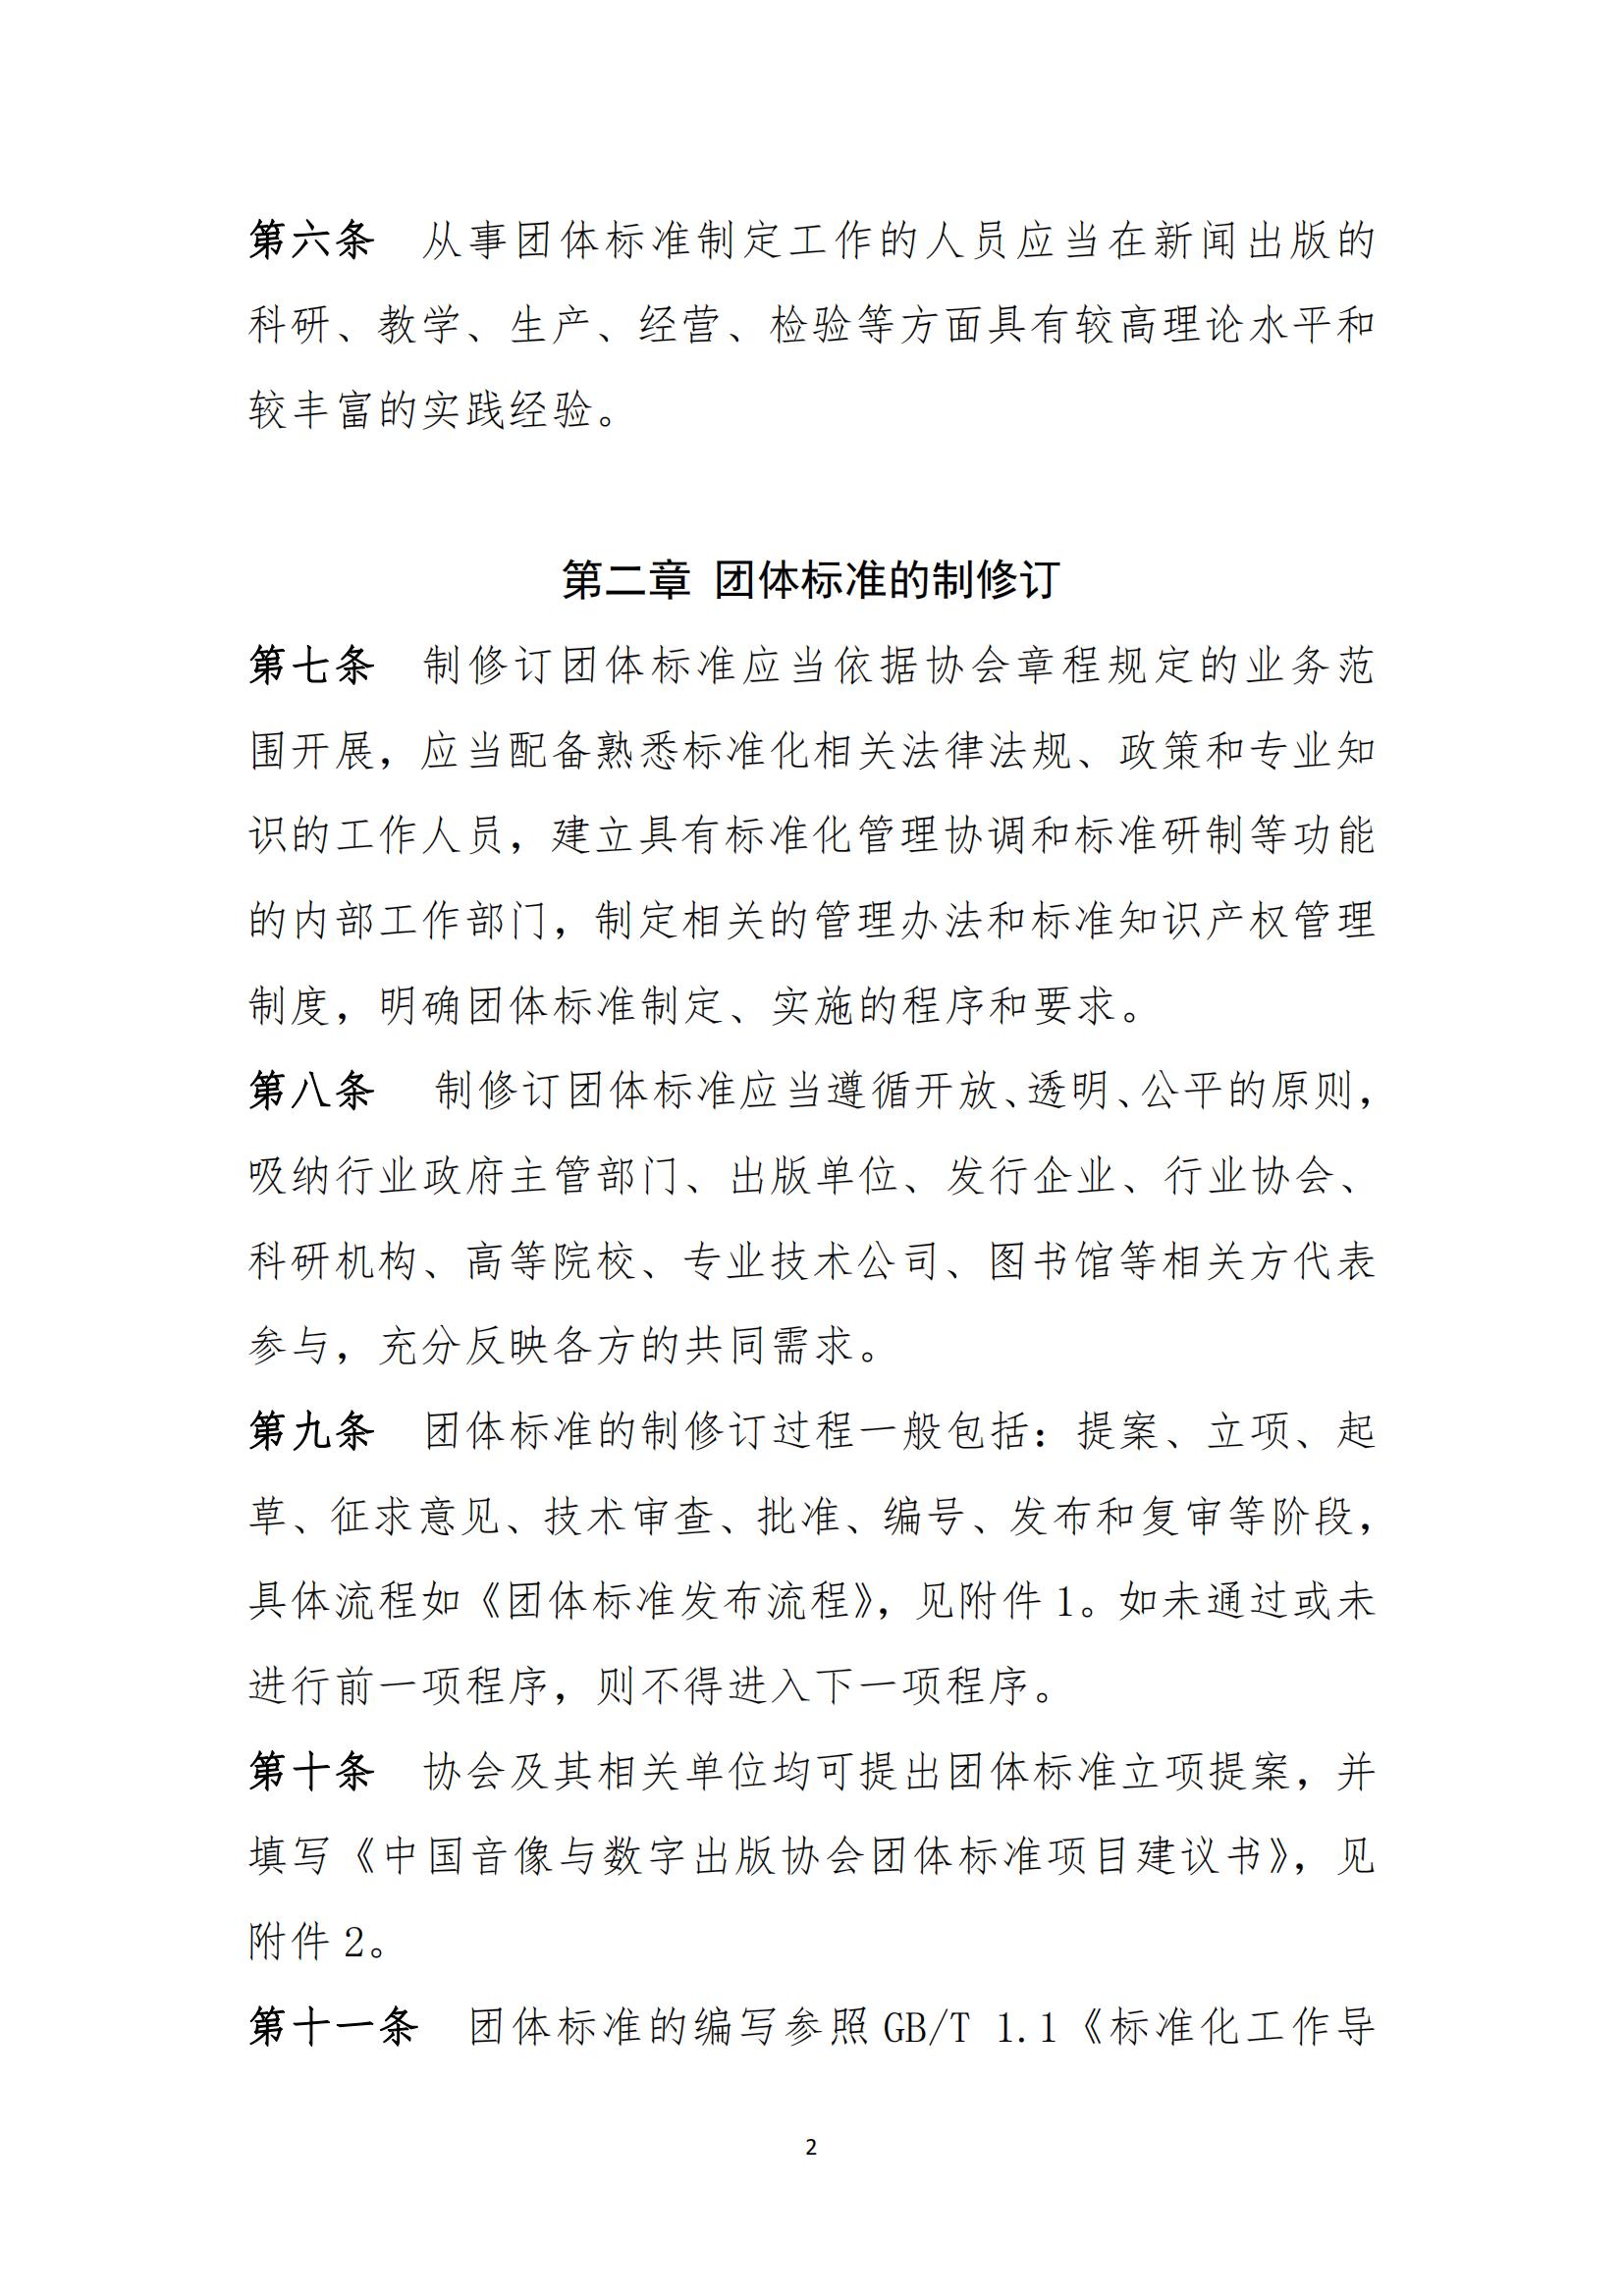 中国音像与数字出版协会团体标准管理规定(2)_01.jpg